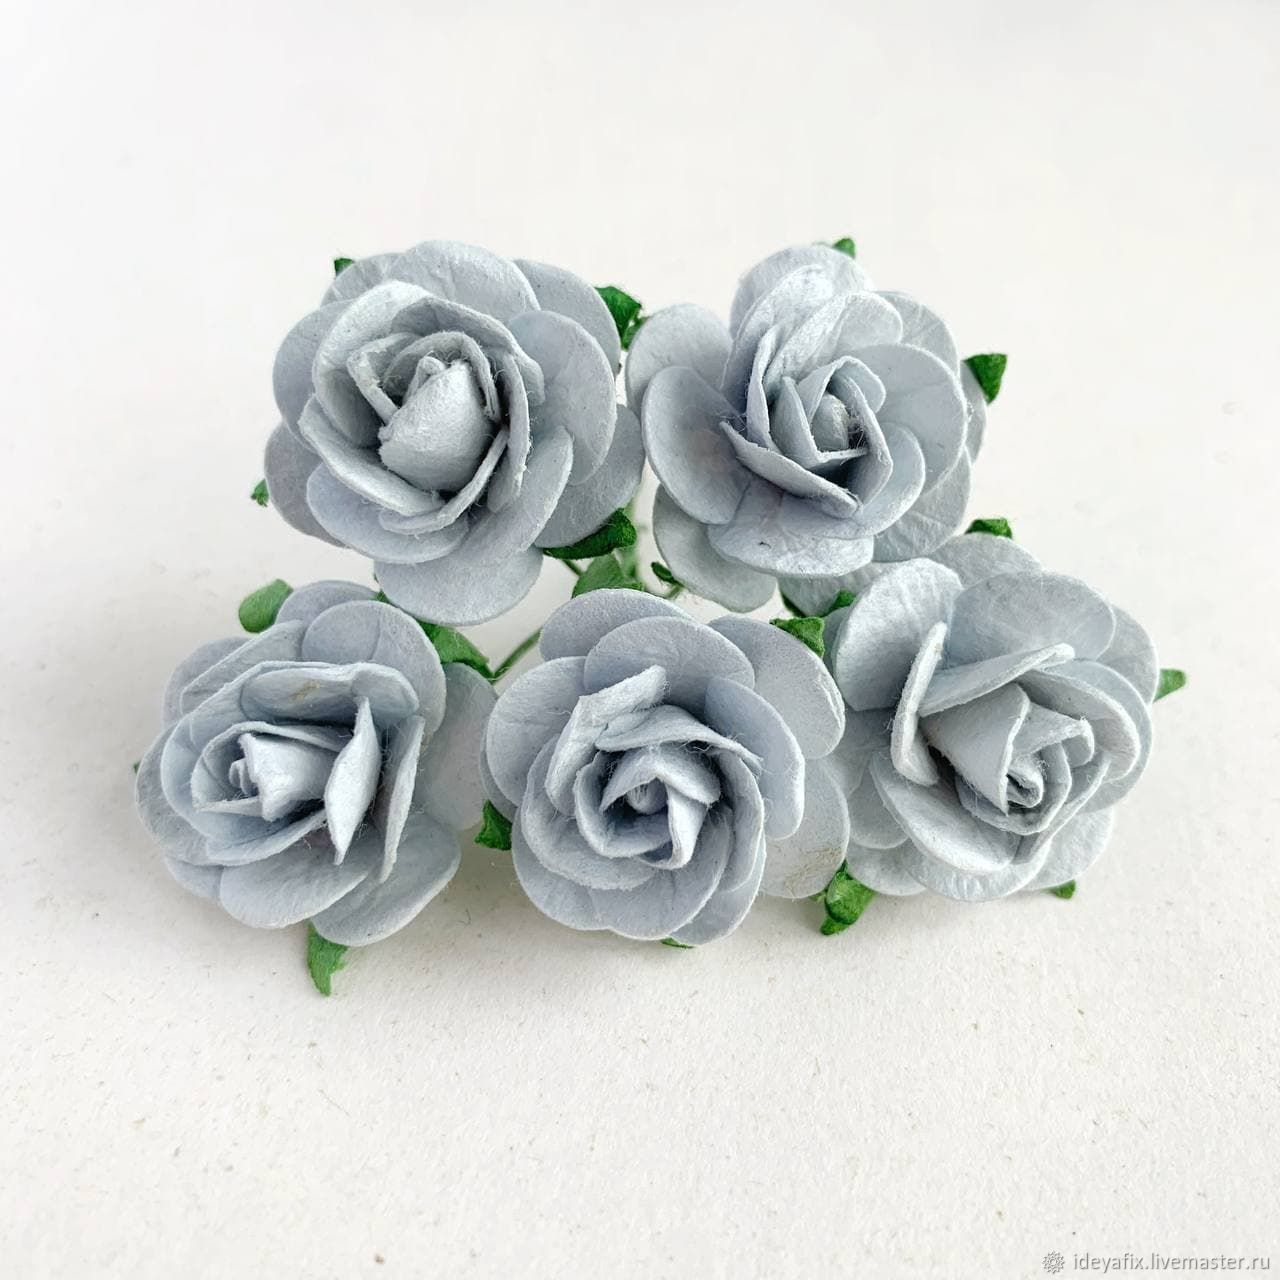 Миди розы 2,5 см, Серо-голубые, 5 шт. (или 20₽/шт), Элементы для скрапбукинга, Ставрополь,  Фото №1